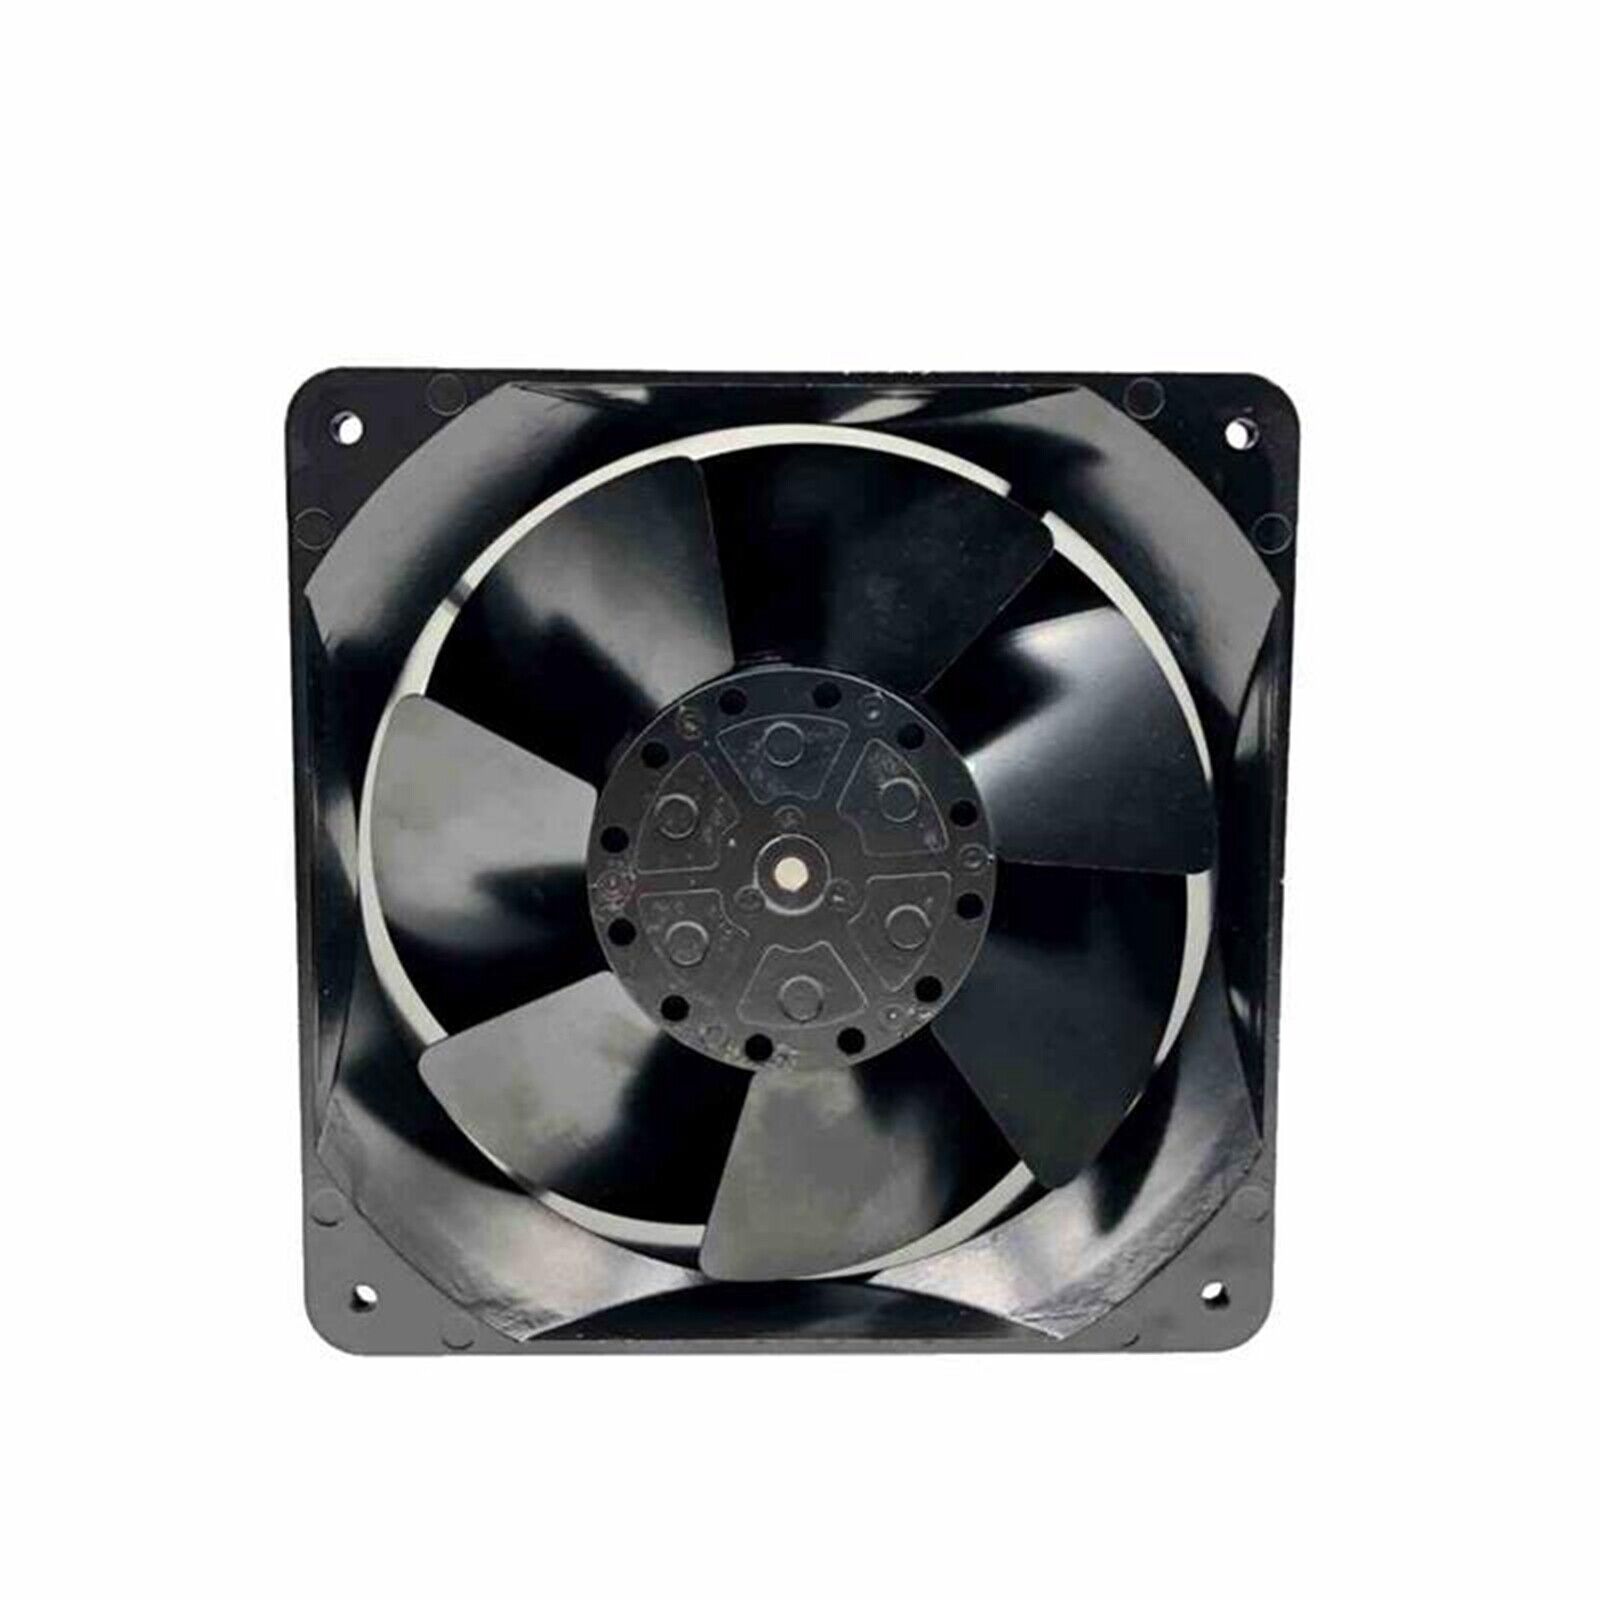 NEW IKURA FAN U6250MKG1-TP Cooling Fan 230V